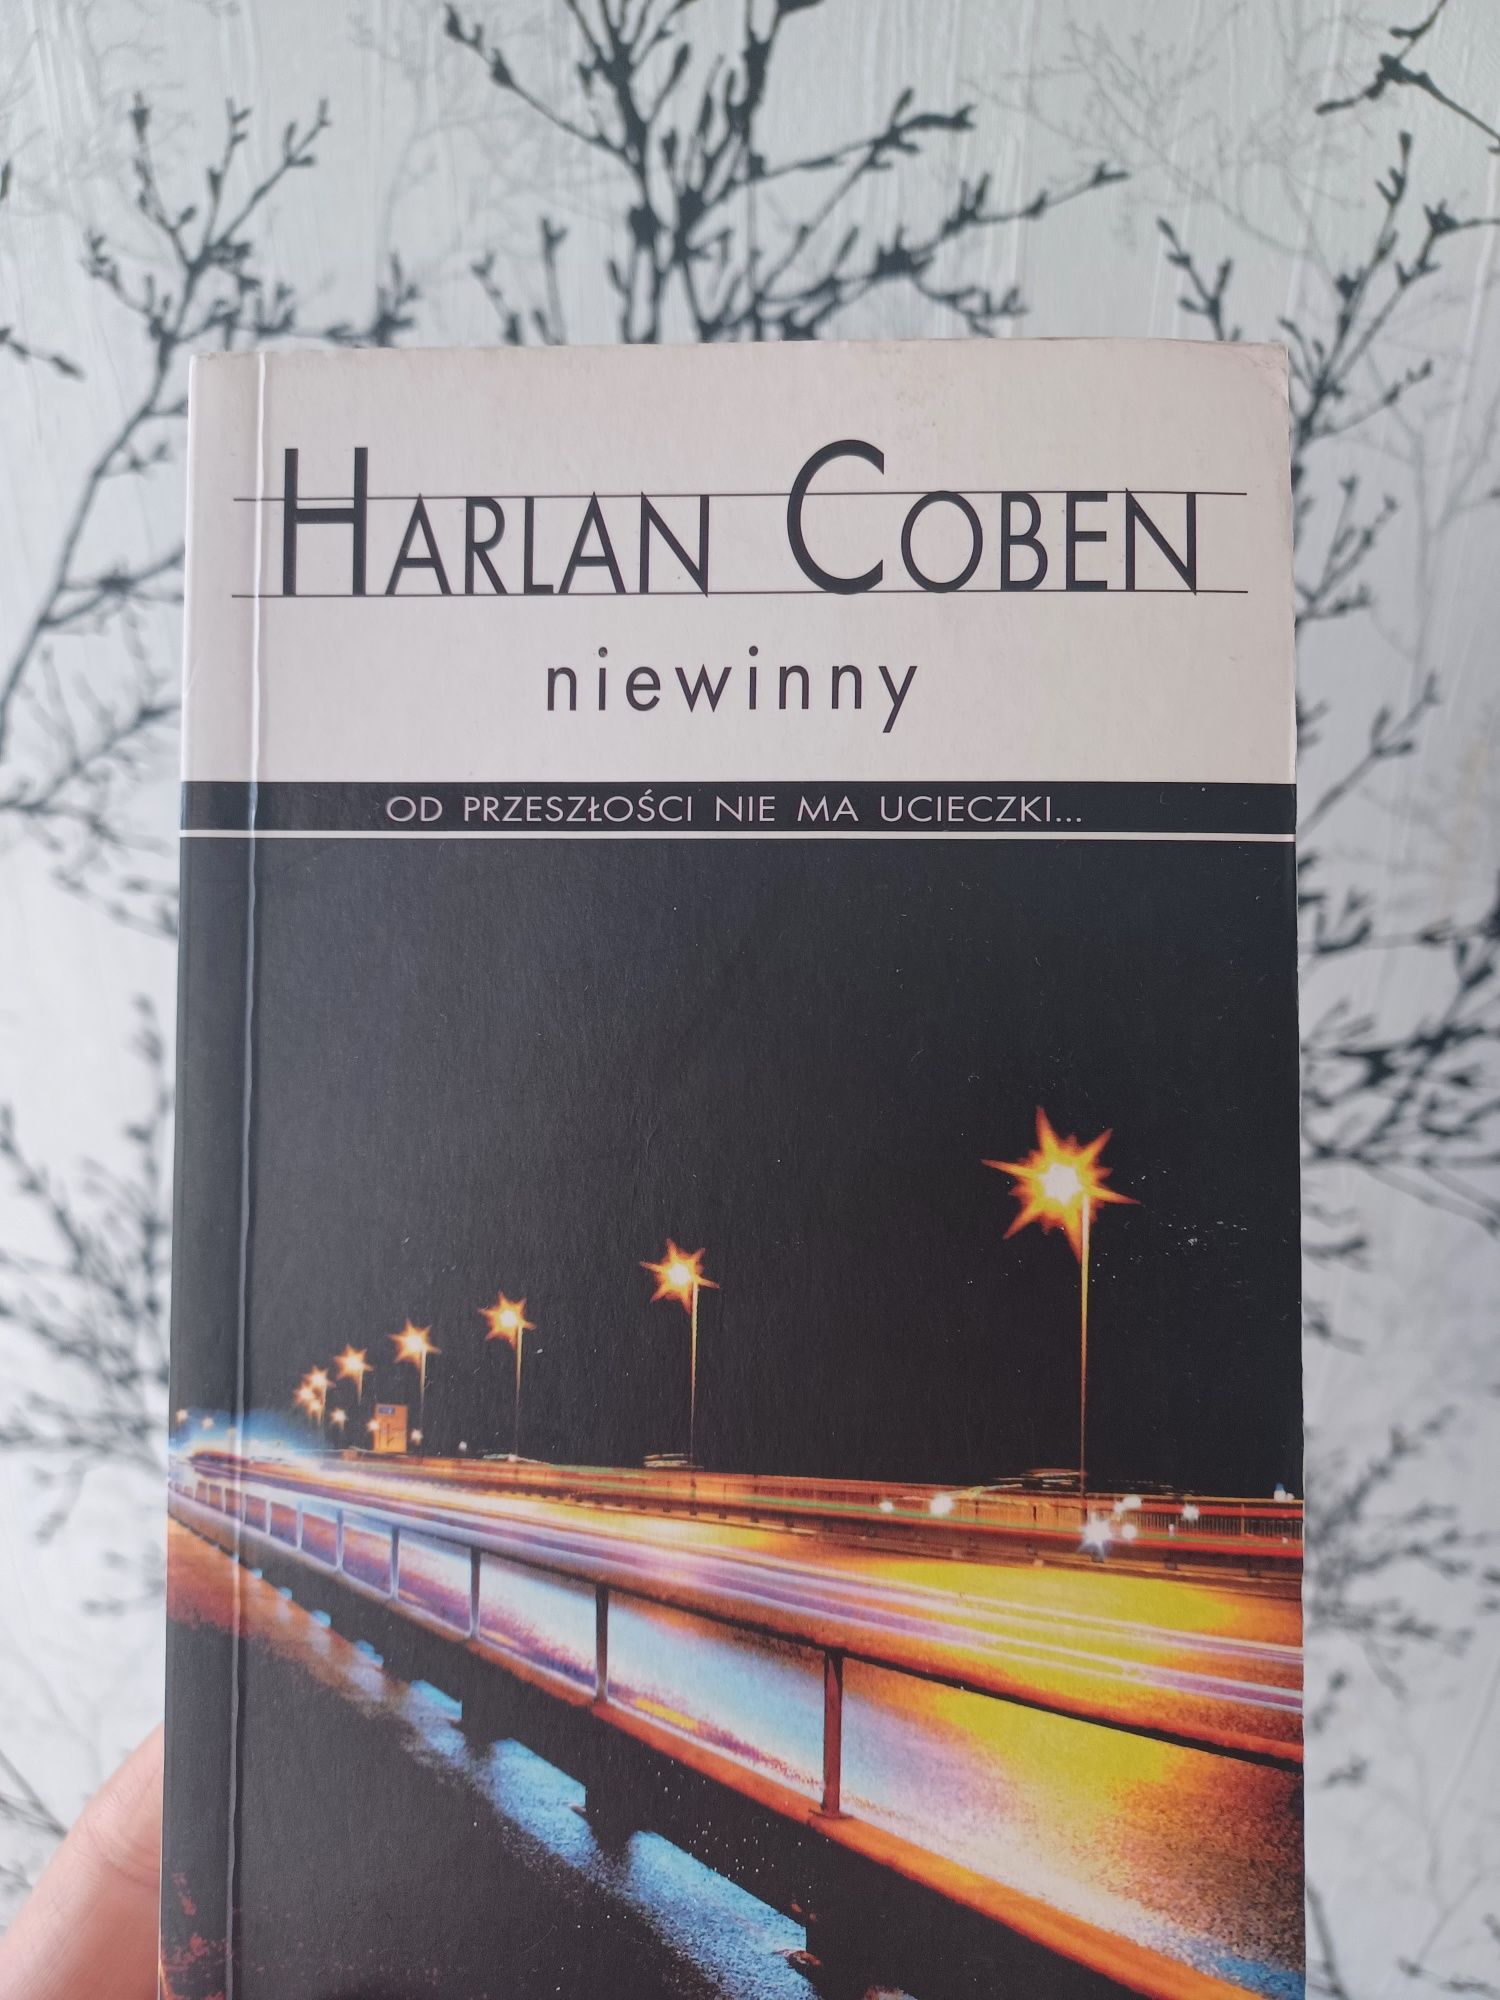 Książka Harlena Cobena,,Niewinny ",nowa